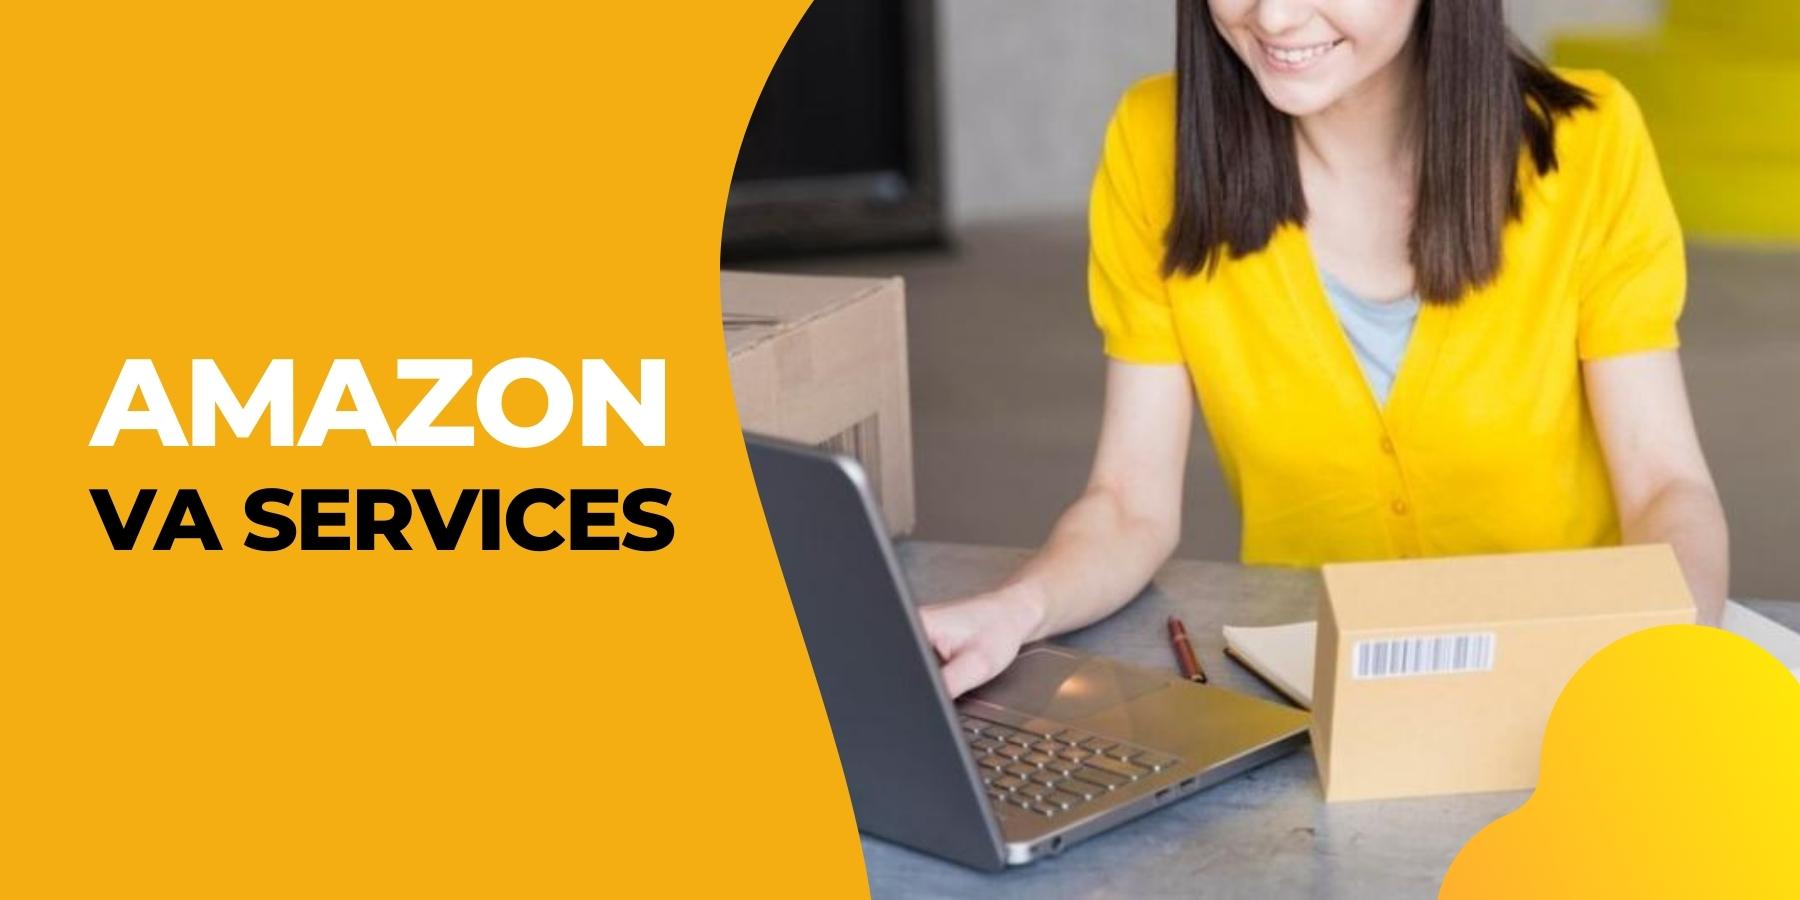 Amazon Va Services